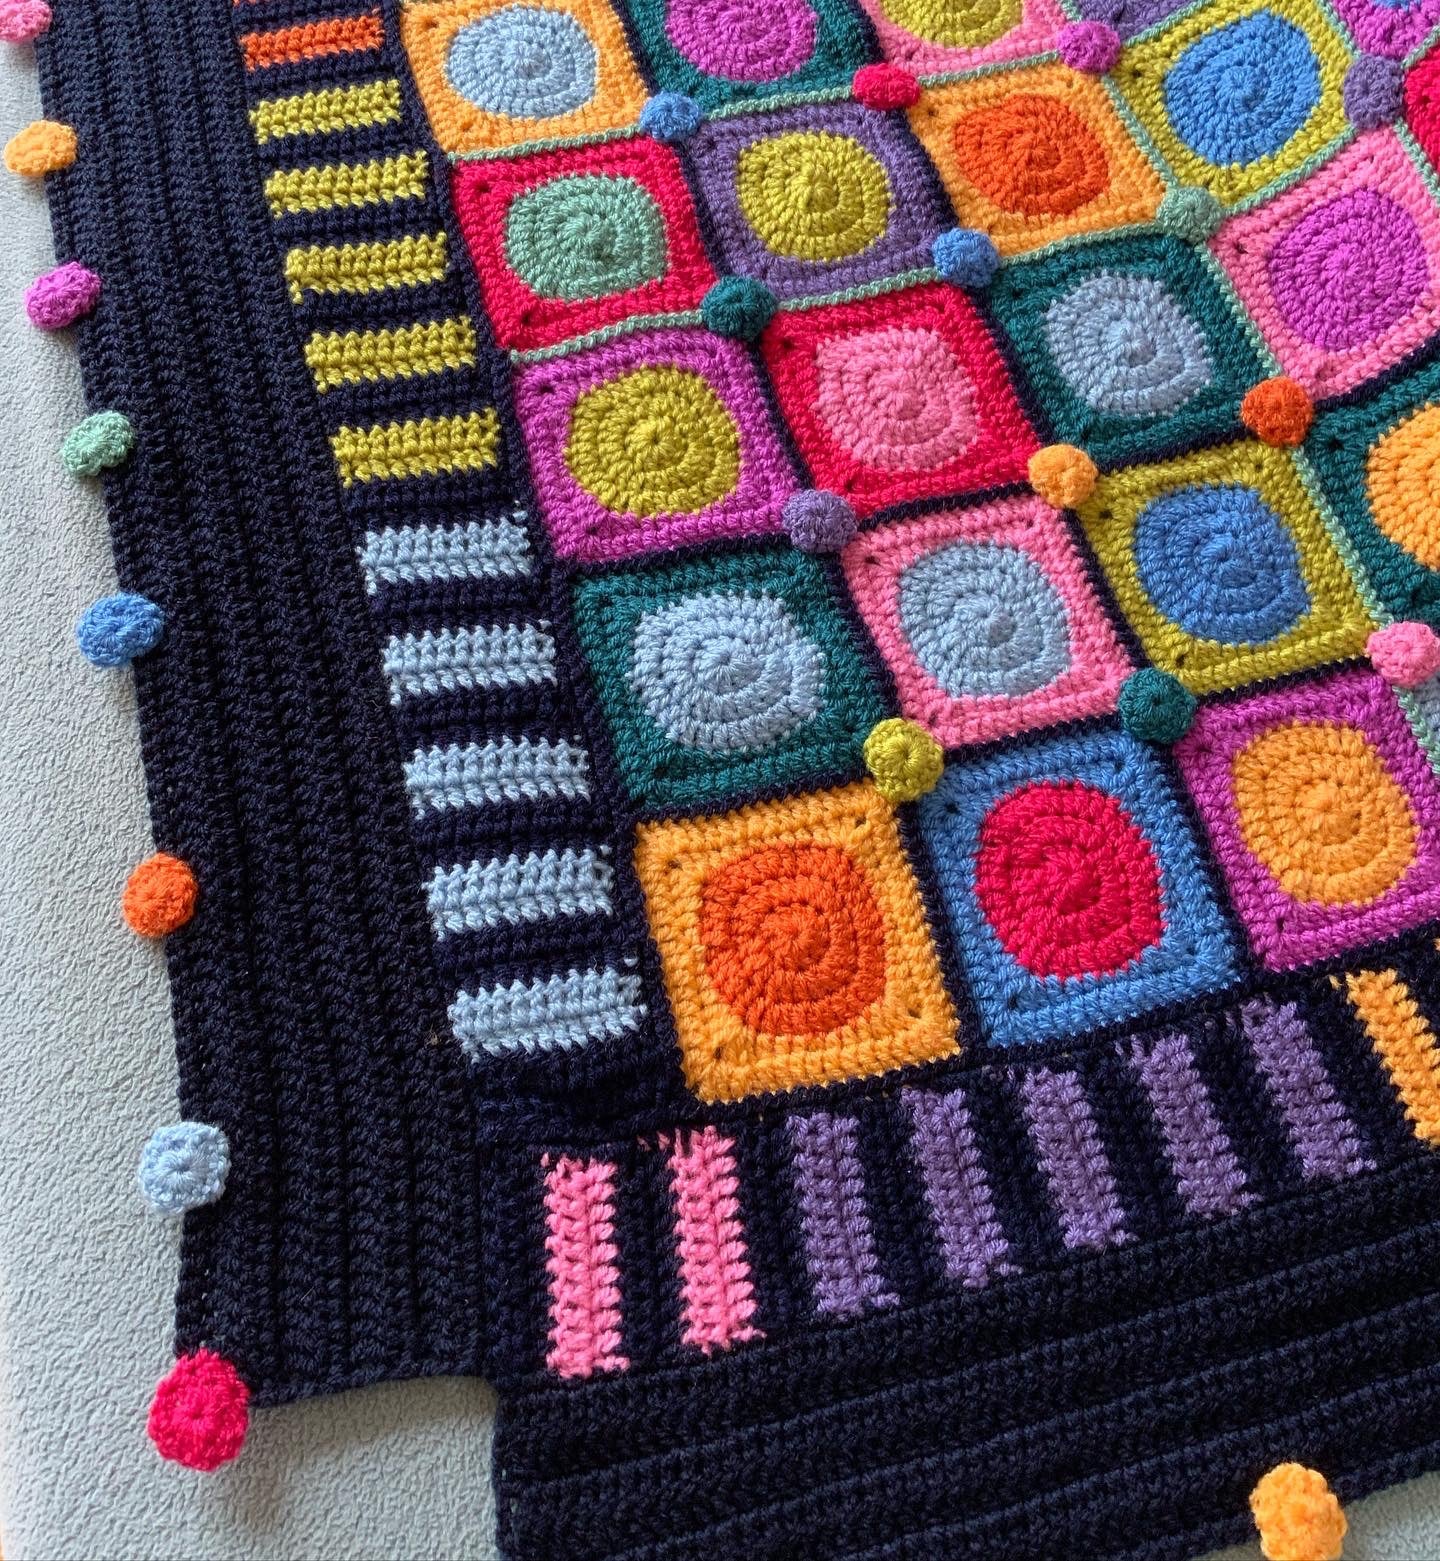 Spots n Stripes Crochet Blanket Kit by Woolthreadpaint